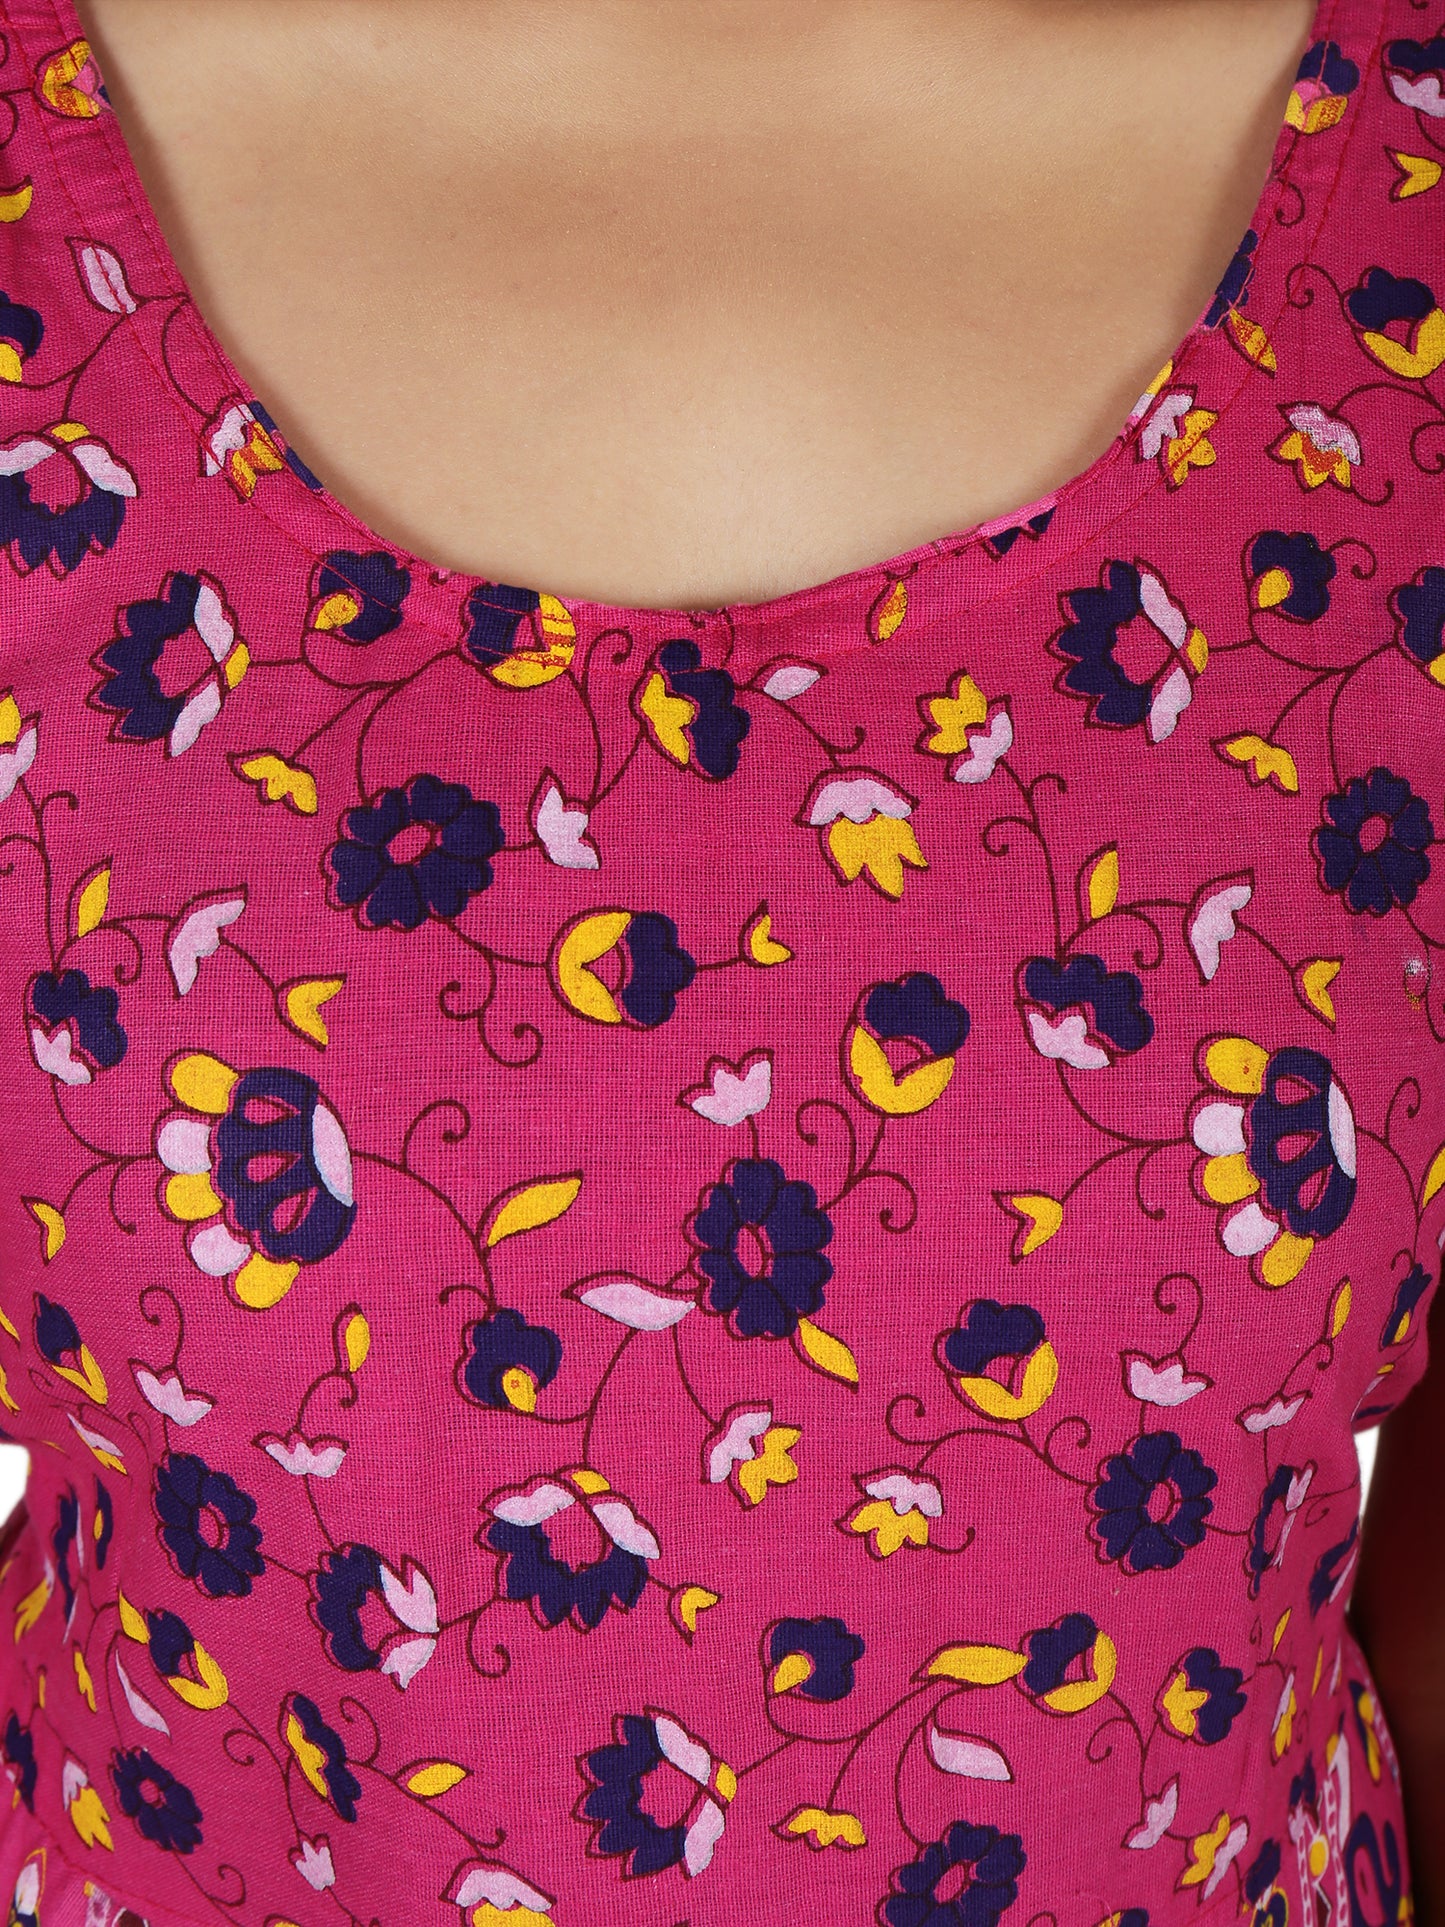 Trendy Beautiful Women Cotton Maternity Semi-Stitched Fabric Maxi Dress -Free Size JAIPUR PRINTS